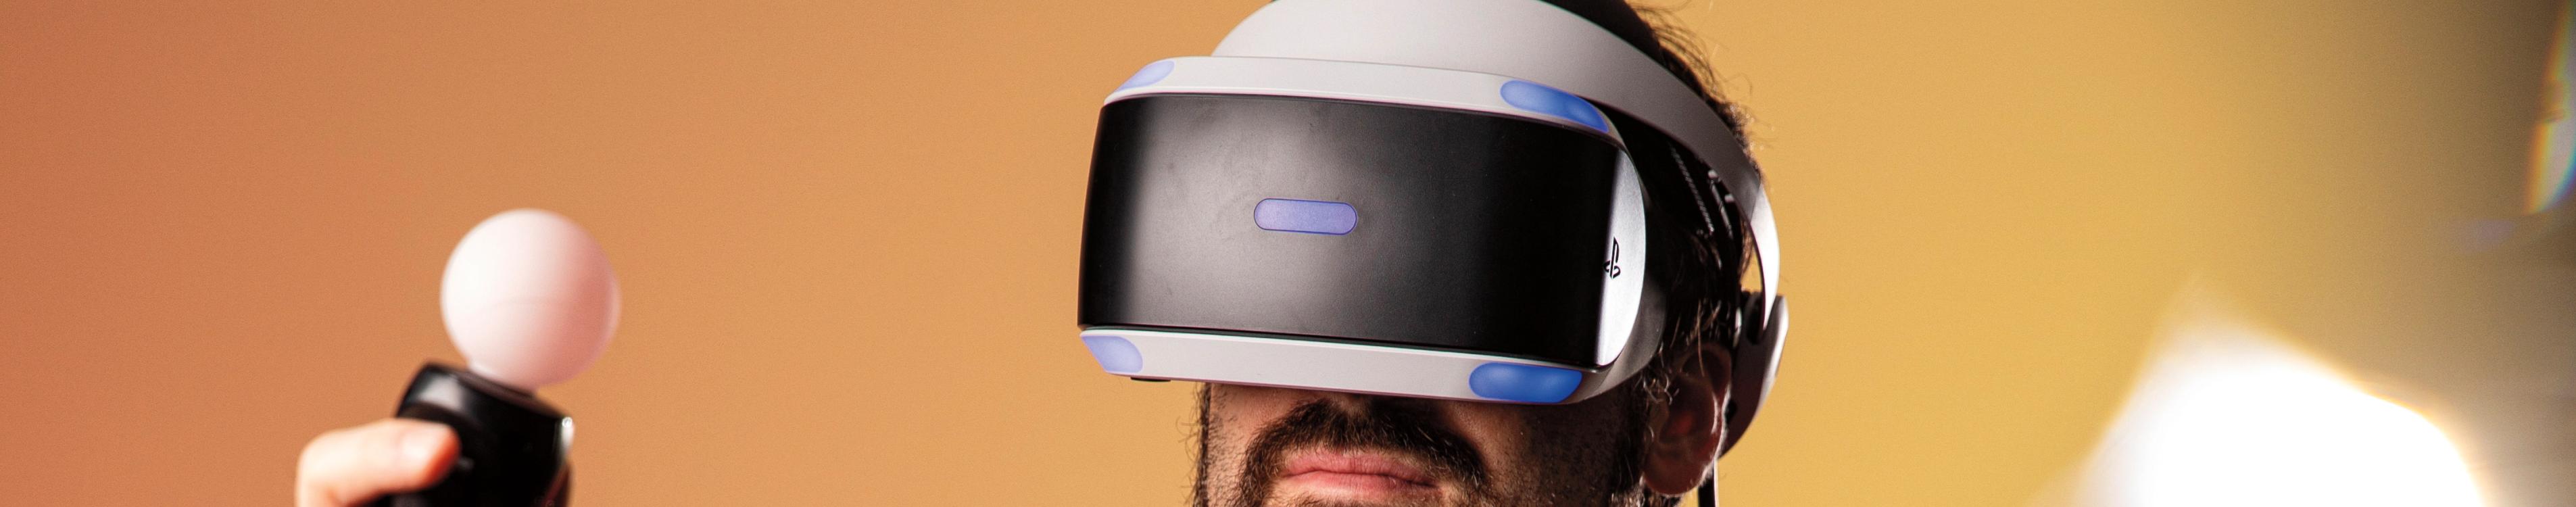 Ryan Payton wearing a VR headset